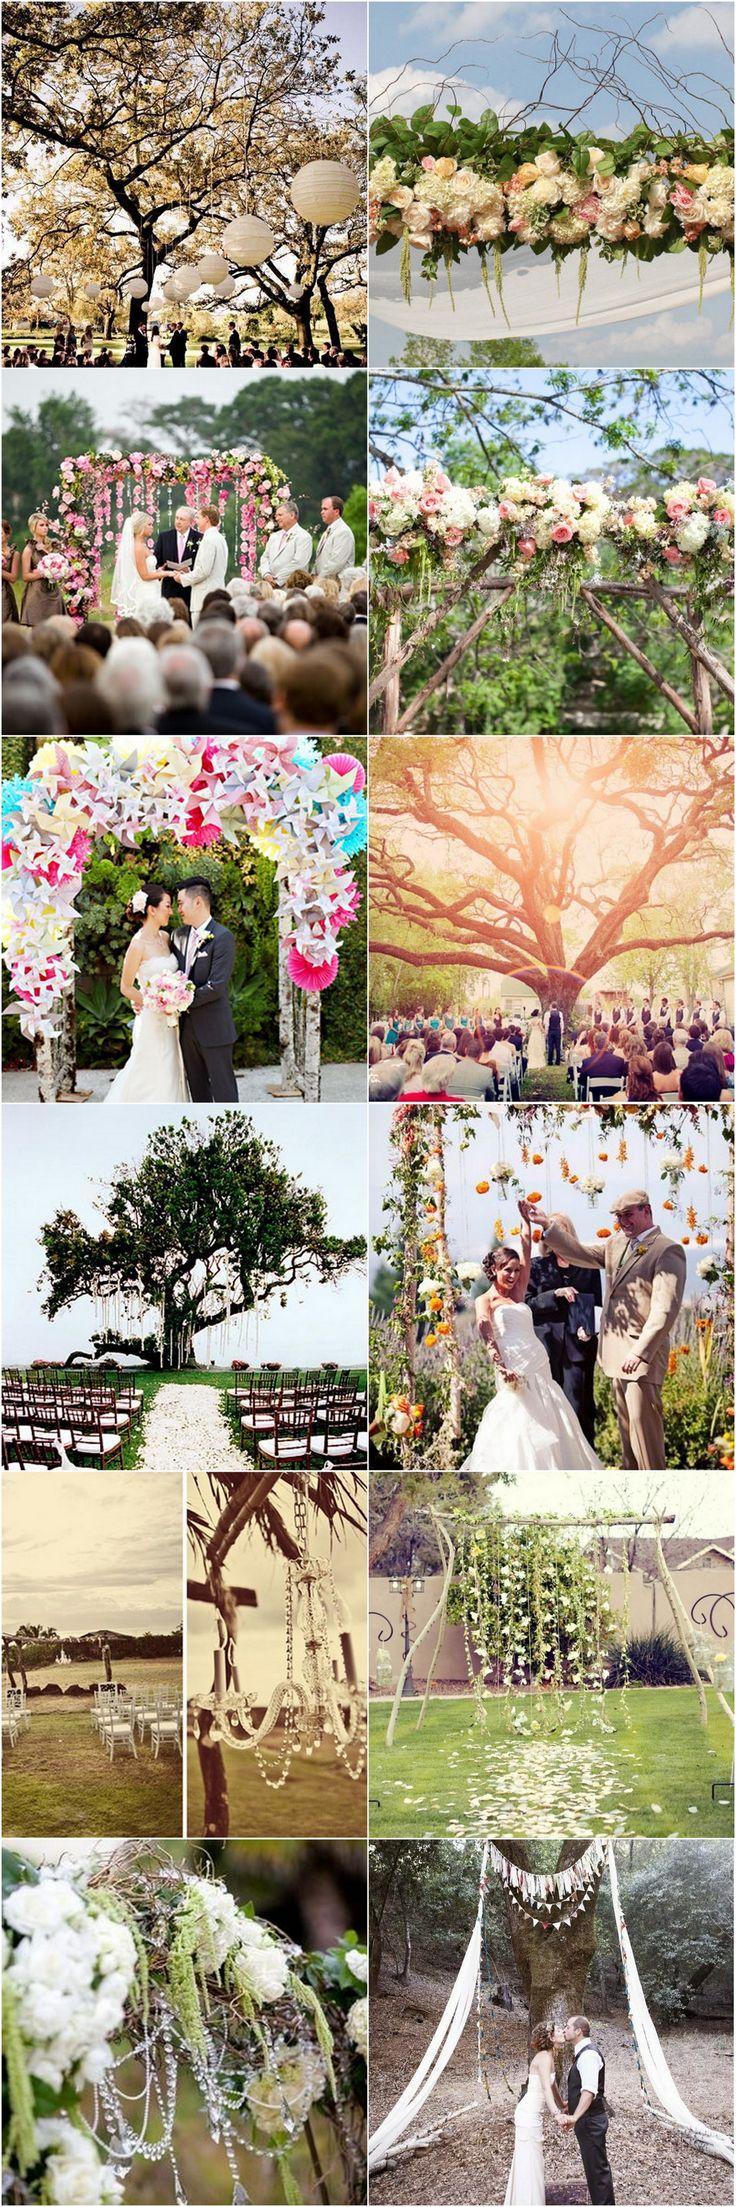 Wedding - 15 Wonderful Wedding Canopy & Arch Ideas